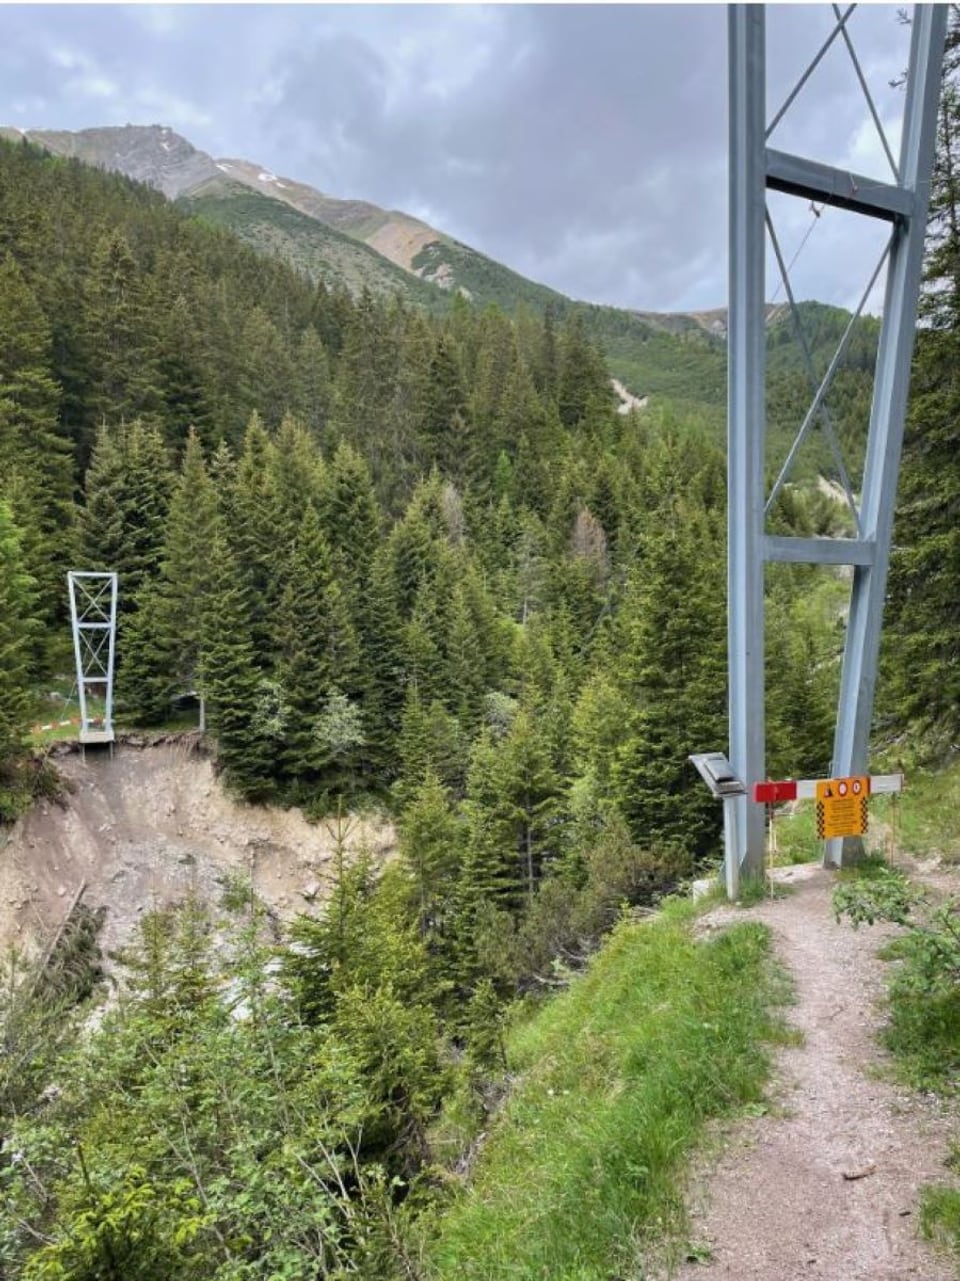 Hängebrücke über bewaldete Schlucht in den Bergen.